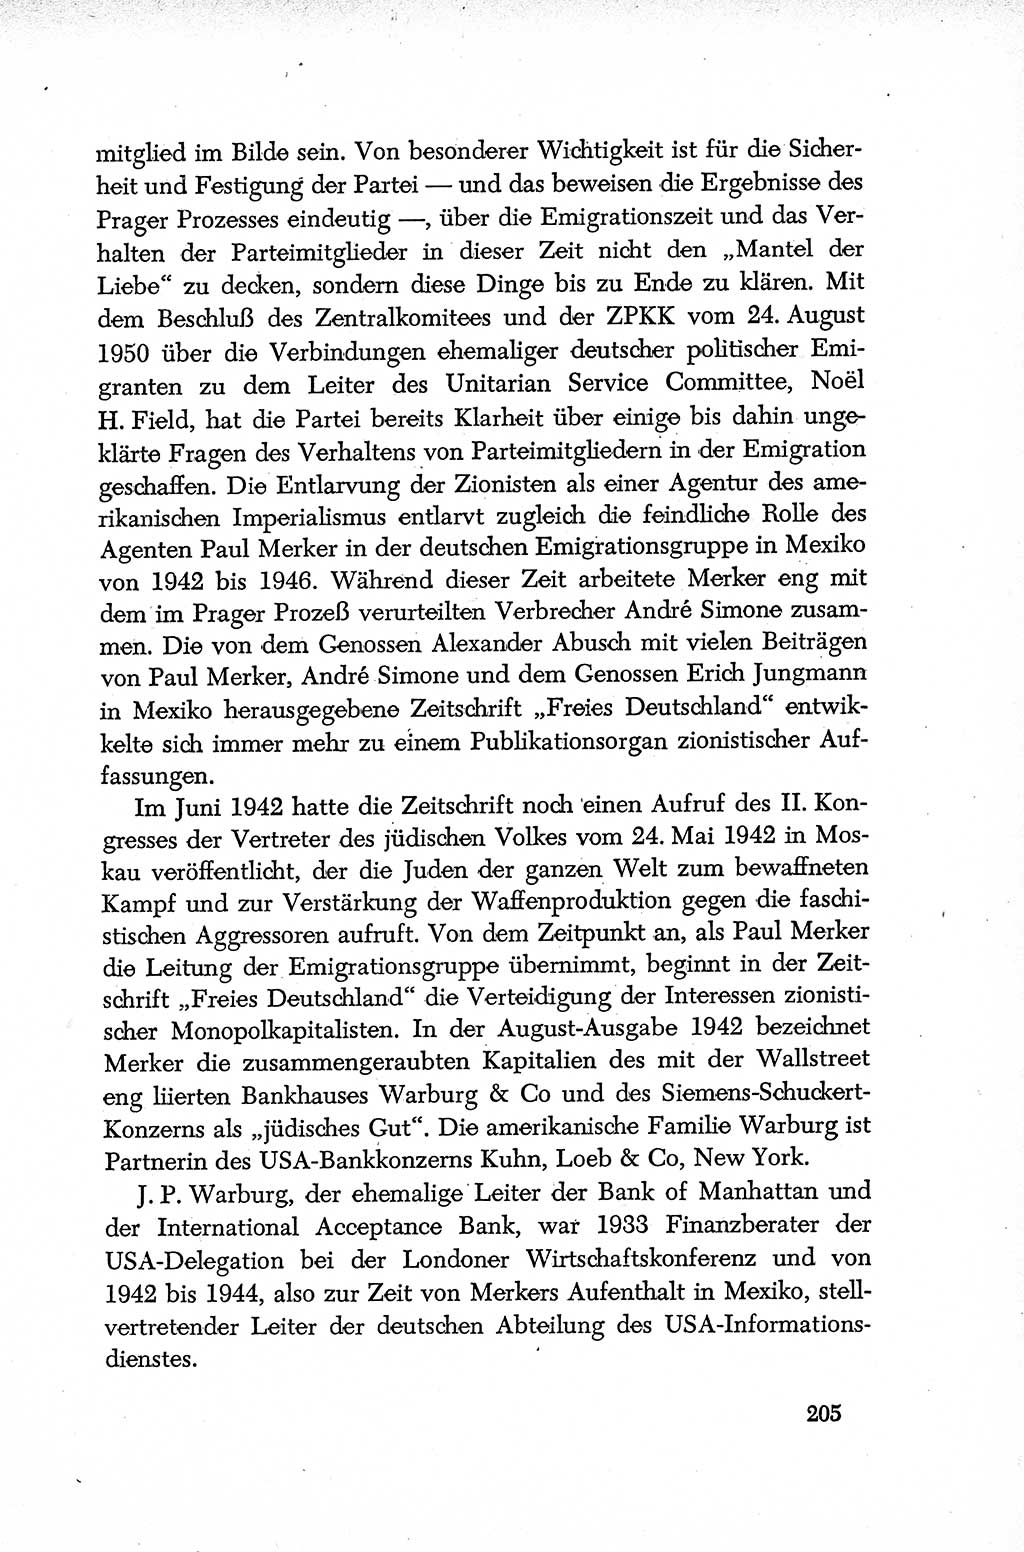 Dokumente der Sozialistischen Einheitspartei Deutschlands (SED) [Deutsche Demokratische Republik (DDR)] 1952-1953, Seite 205 (Dok. SED DDR 1952-1953, S. 205)